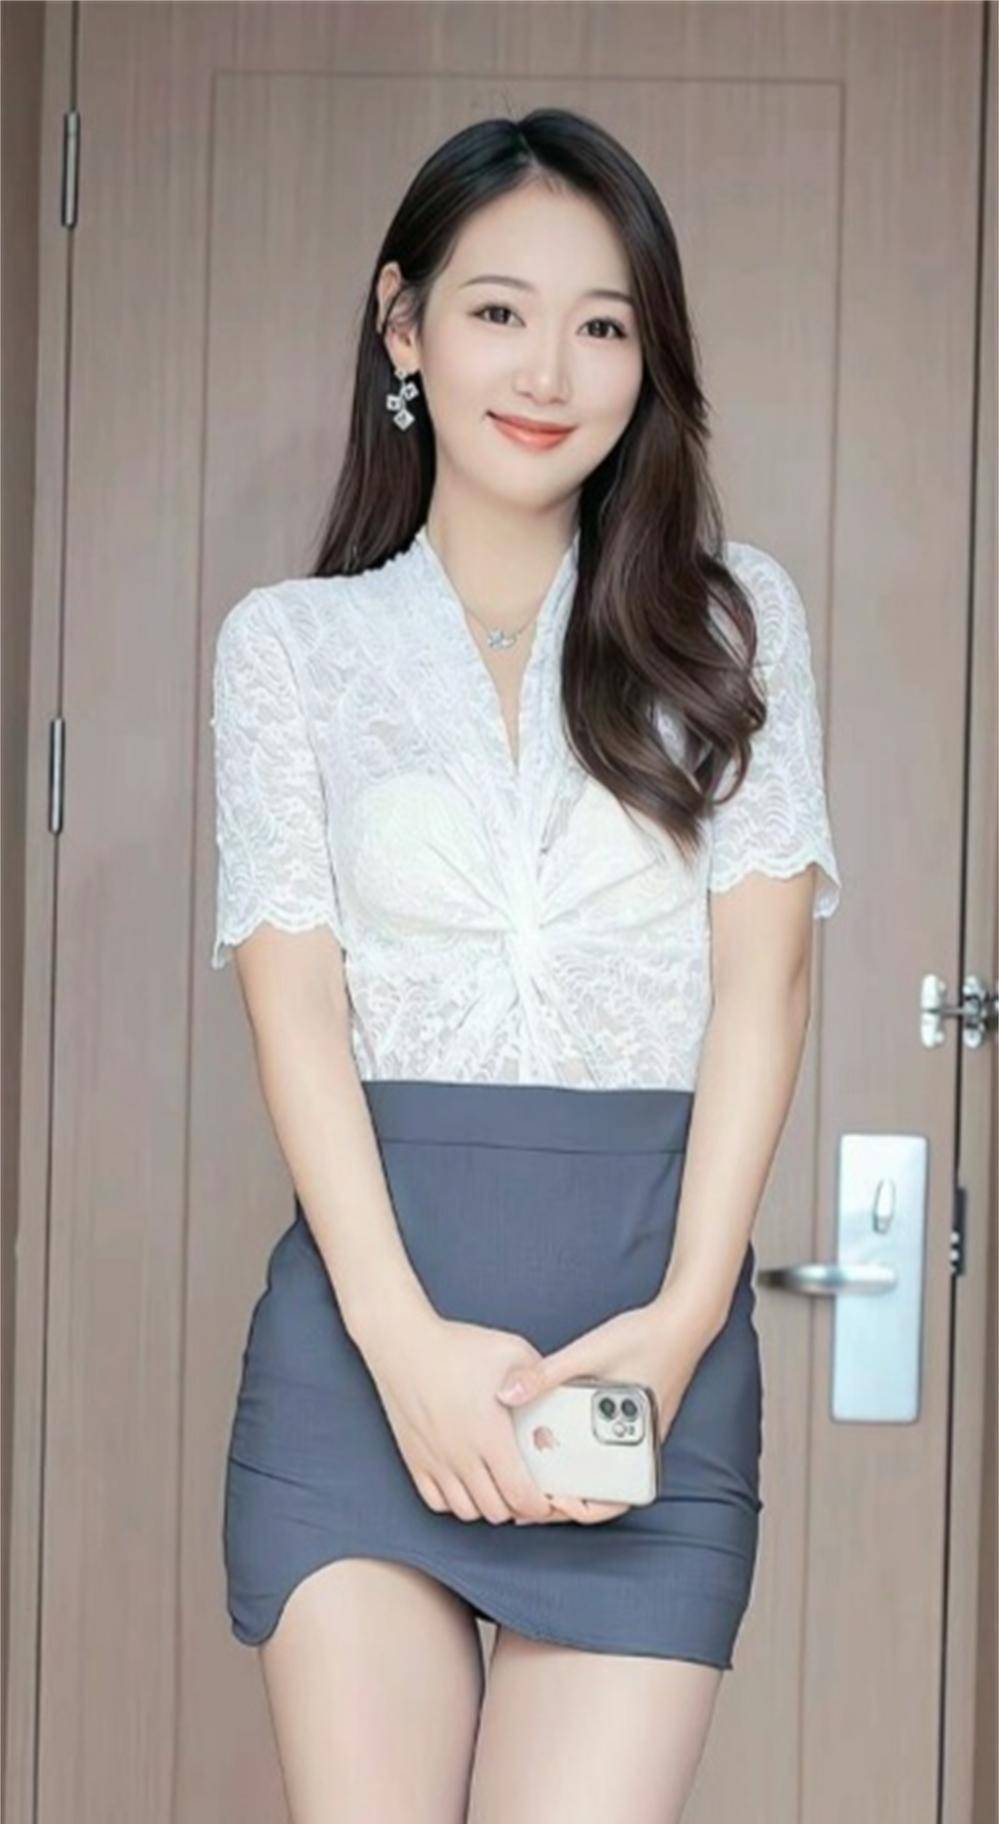 女歌手,演员,snh48成员唐安琪短裙妆扮写真美照片152女歌手,演员,snh